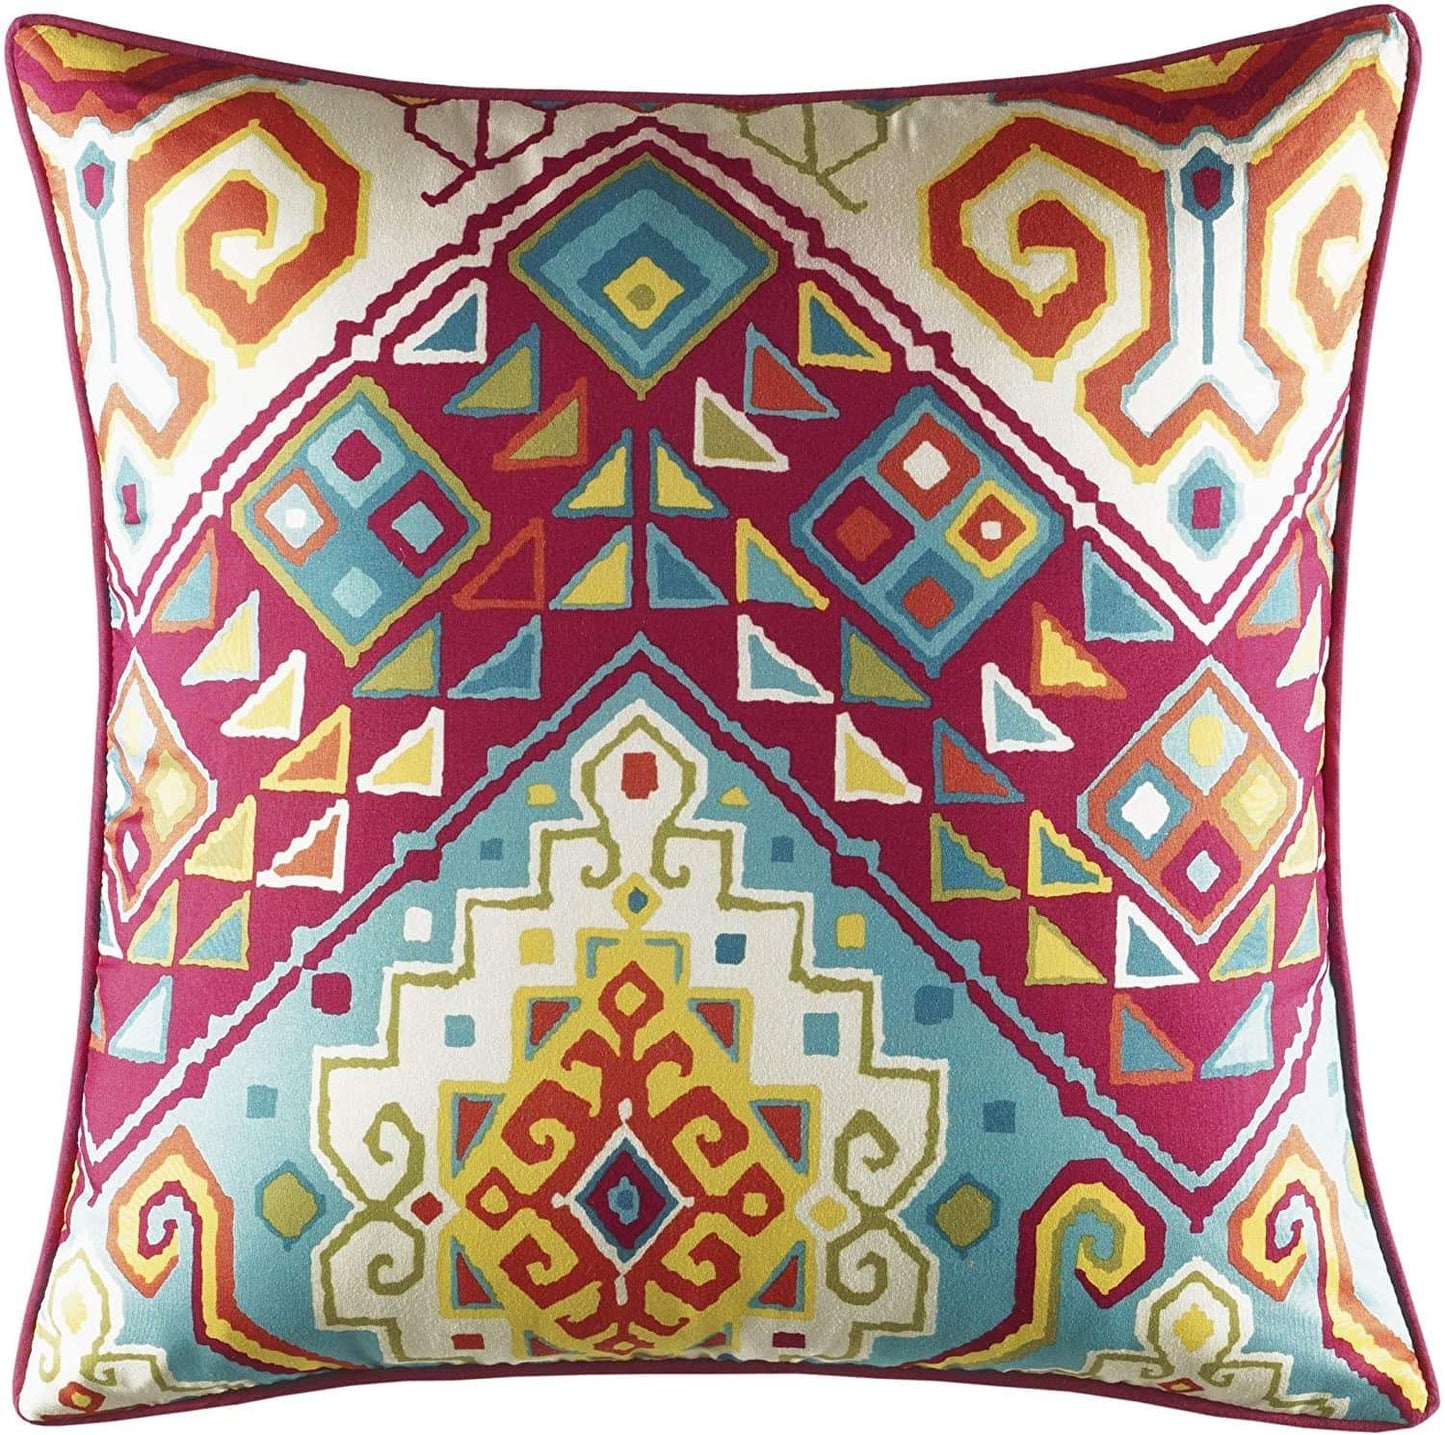 AZALEA SKYE Comforter/Quilt/Duvet Twin - 168cm x 218cm / Pink Moroccan Nights Comforter Set - 3 Pieces